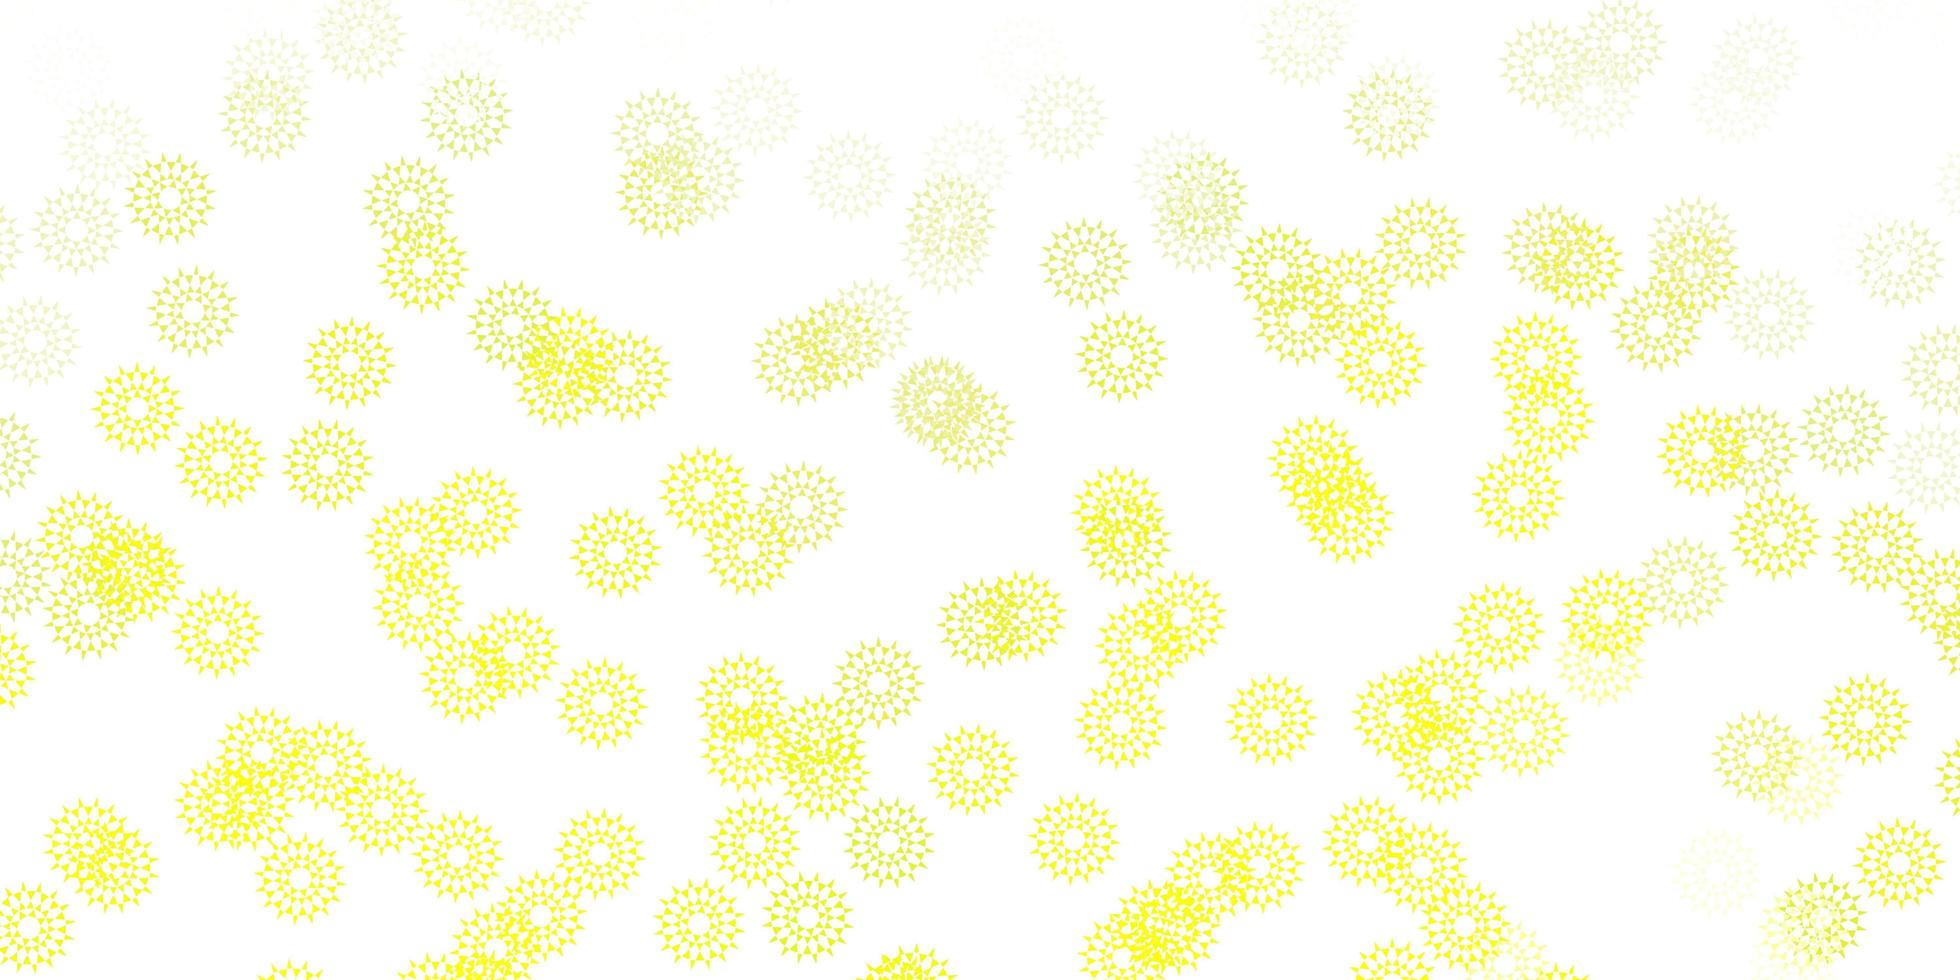 fundo do doodle do vetor verde e amarelo claro com flores.